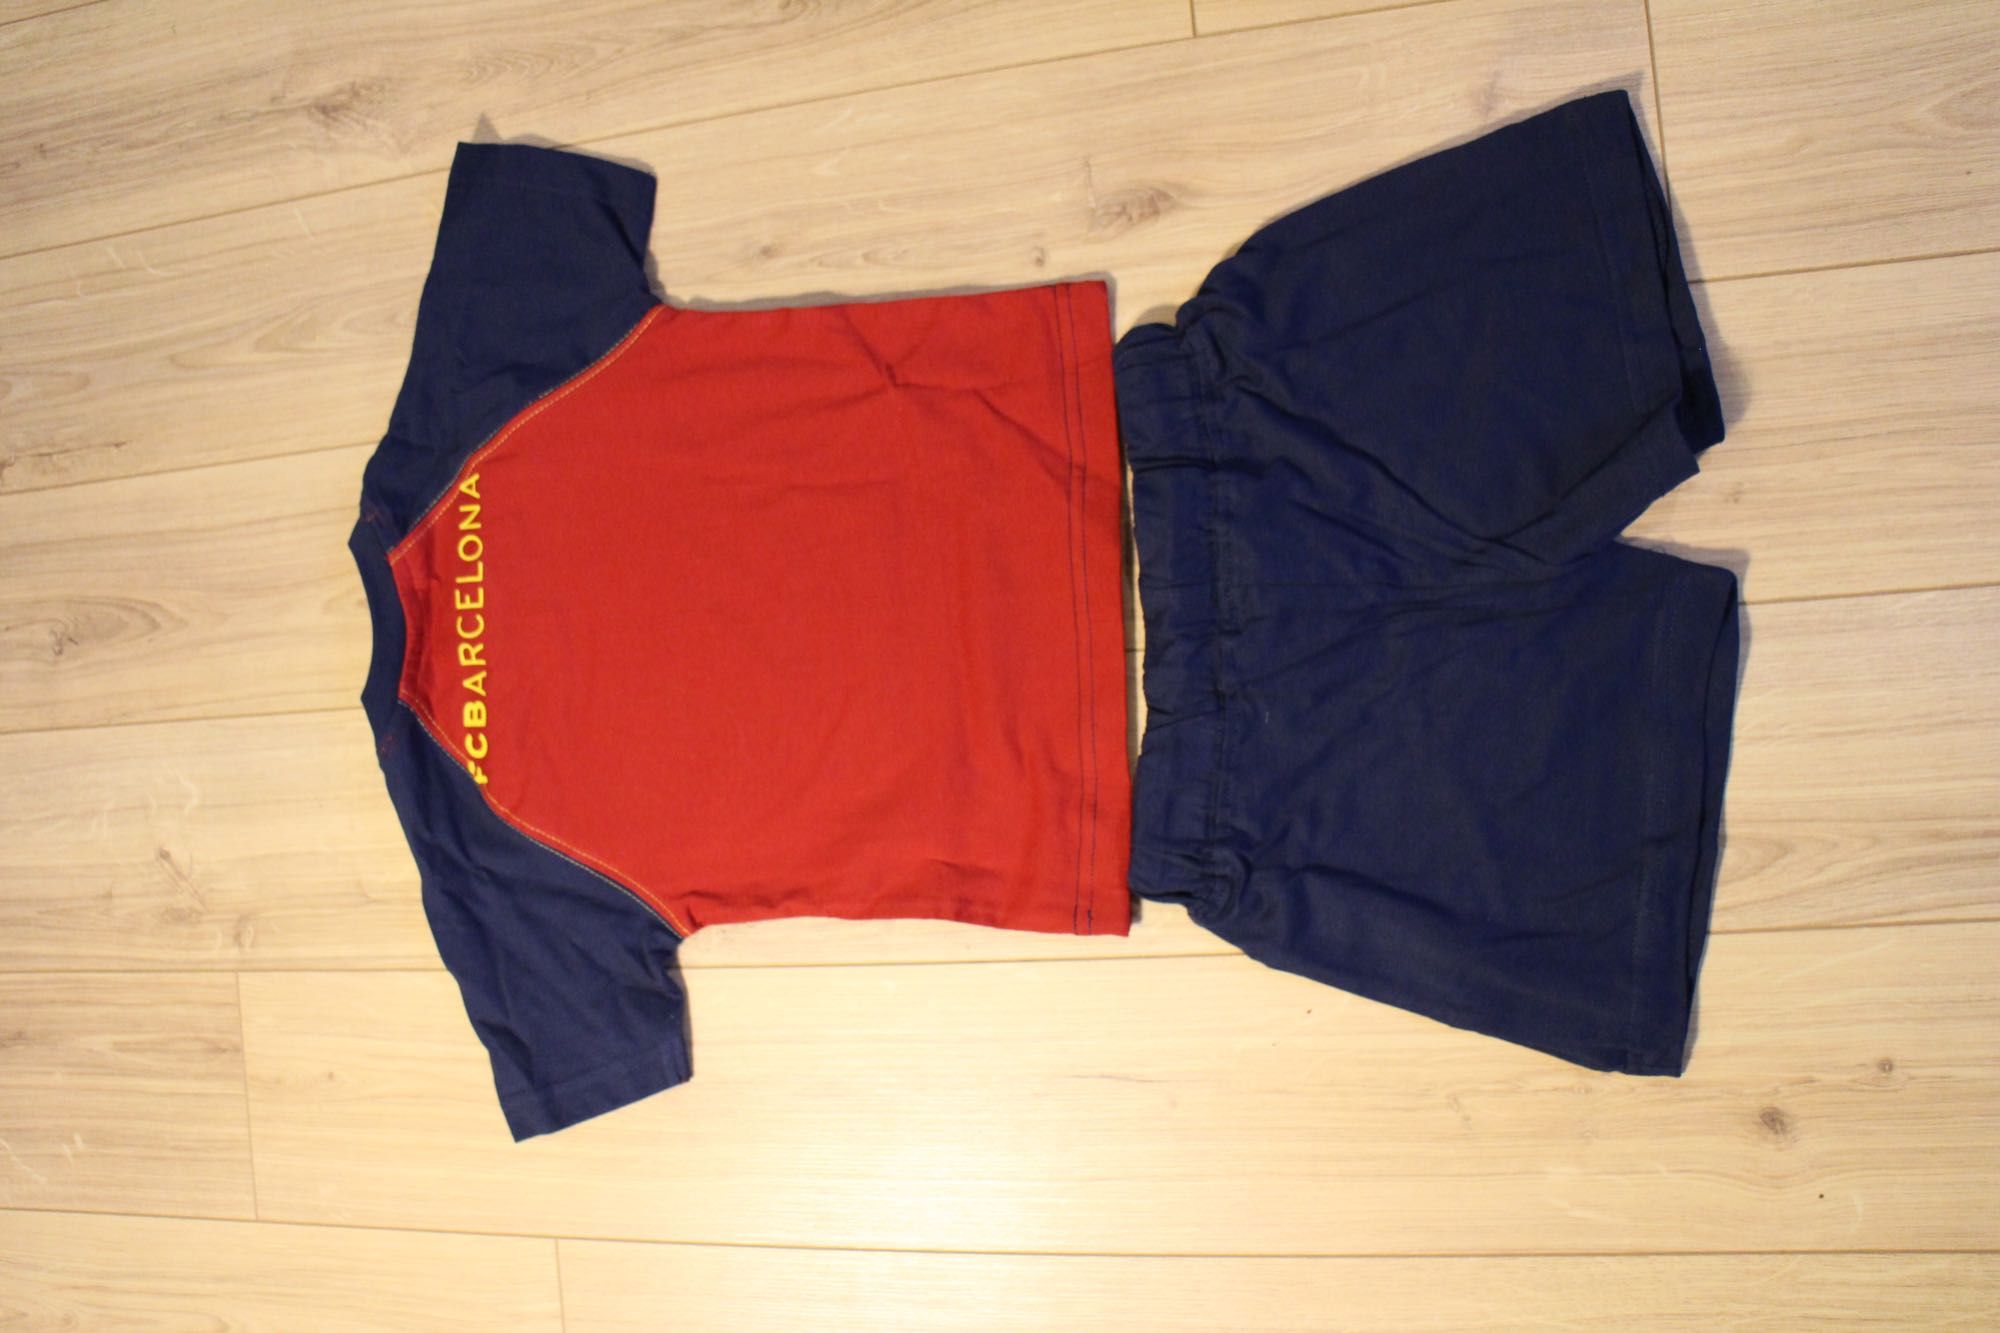 Zestaw niemowlęcy FC Barcelona - koszulka i spodenki - 92